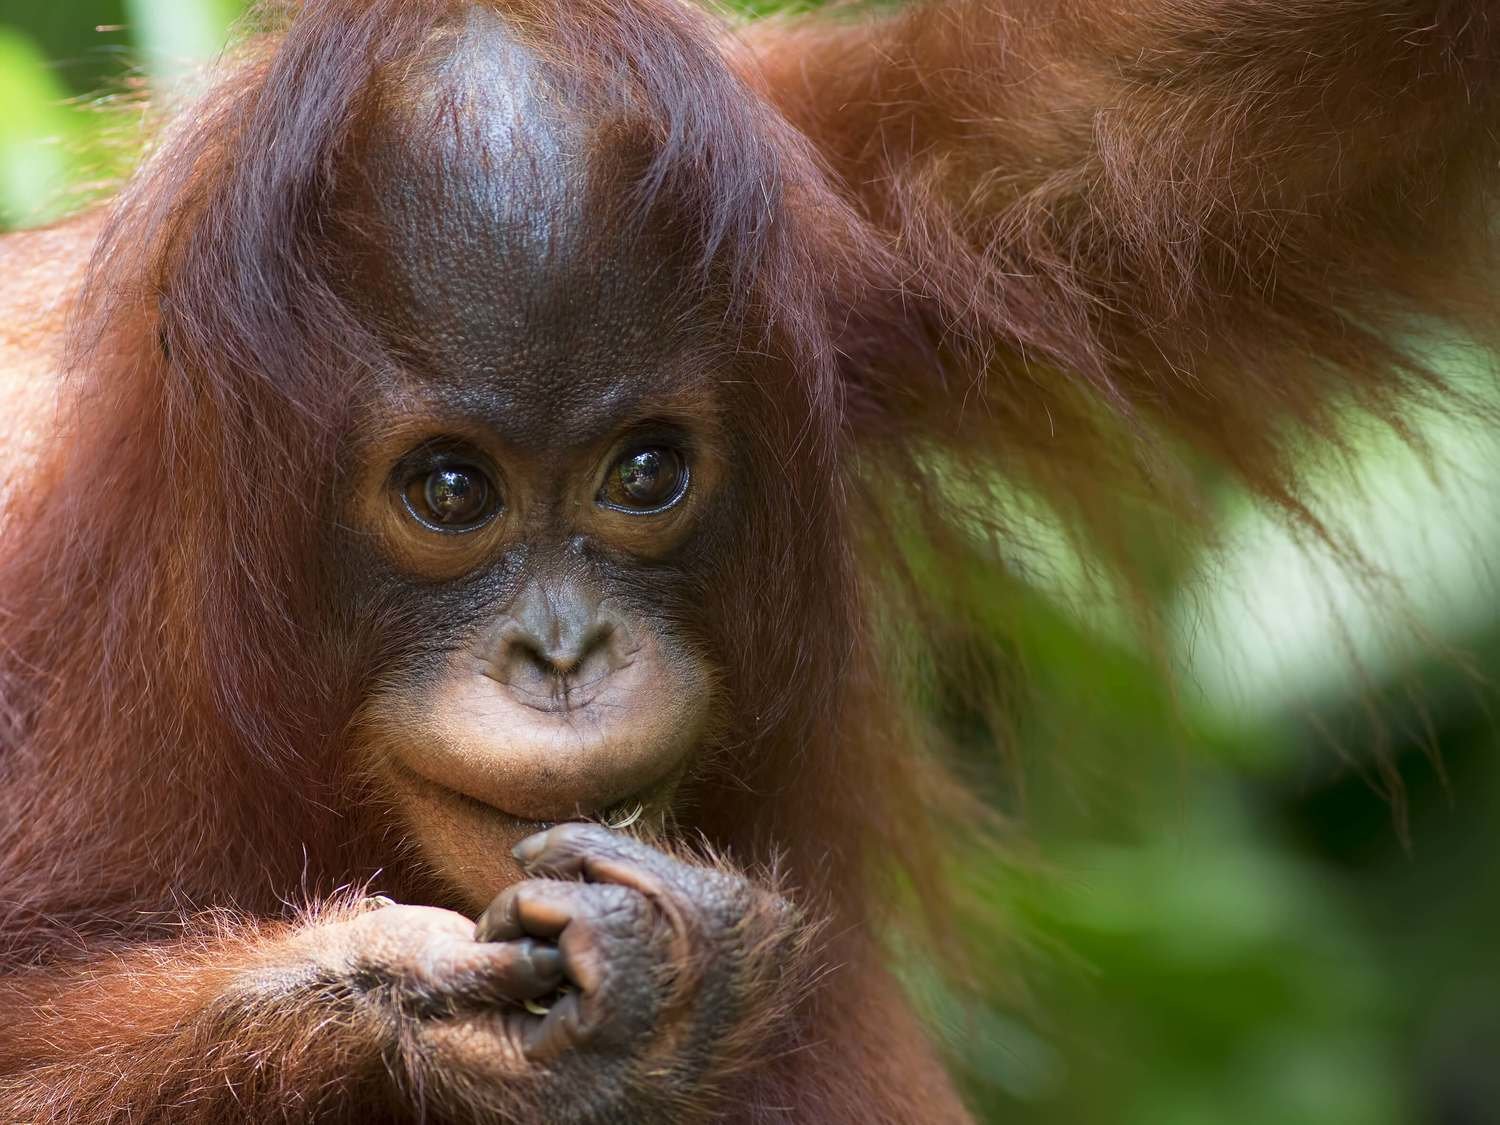 Adopt An Orangutan